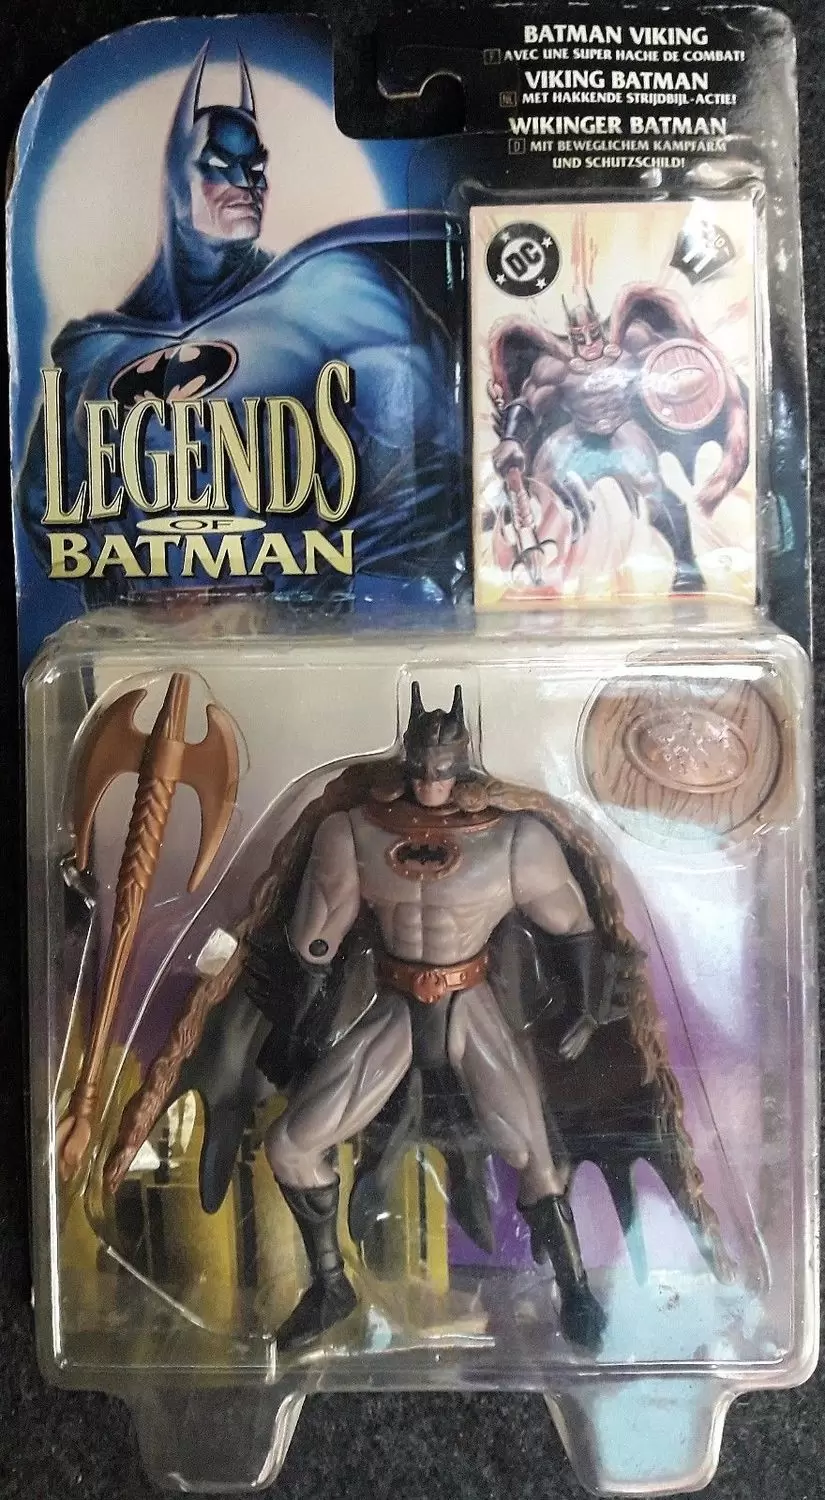 Legends of Batman - Viking Batman